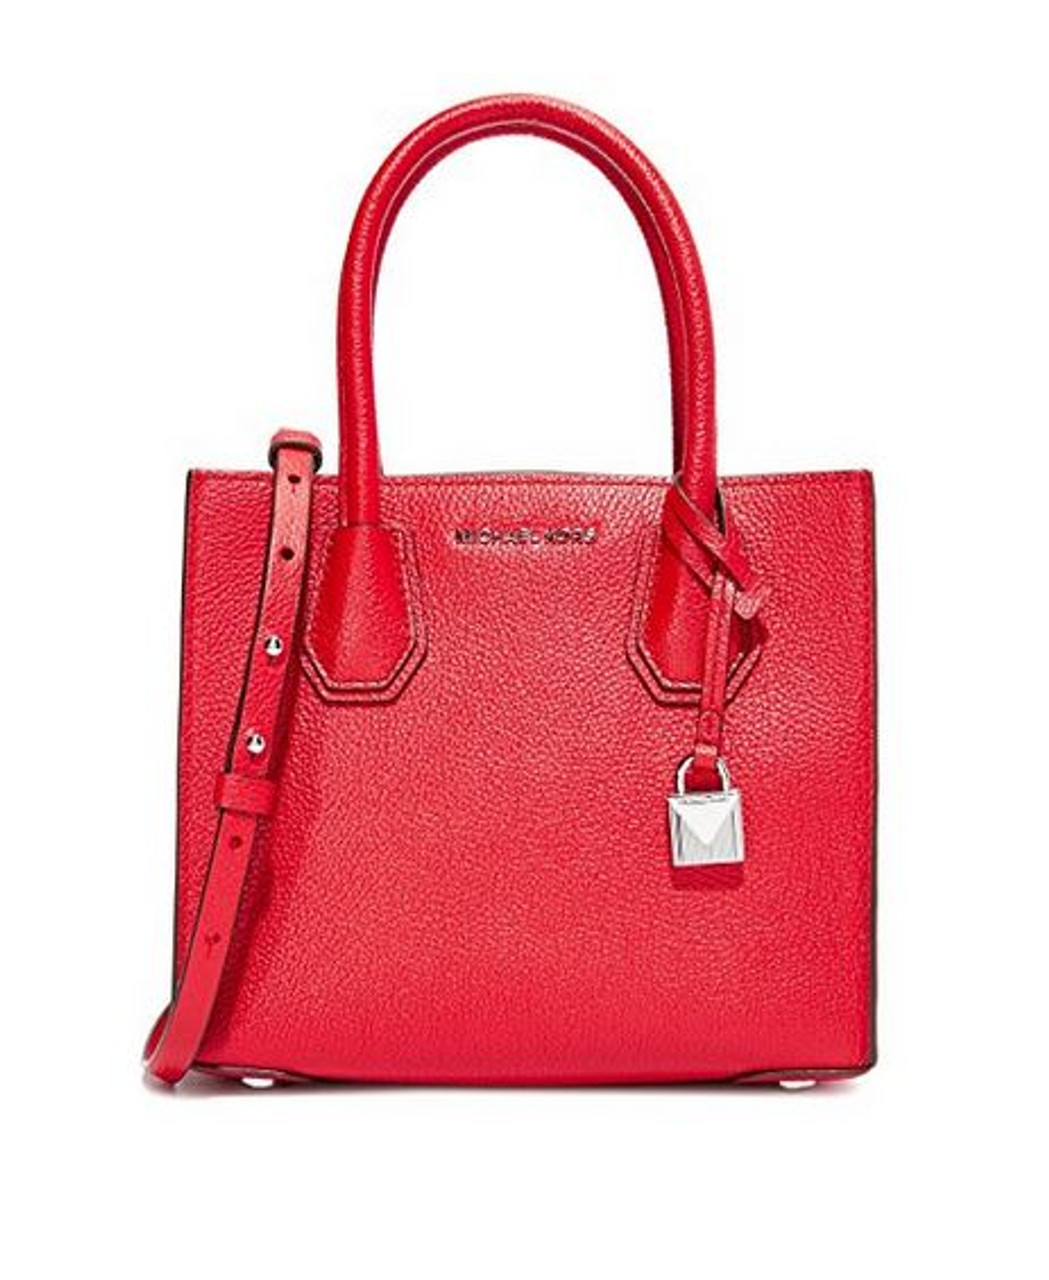 Medium Mercer Messenger Bag, Bright Red 